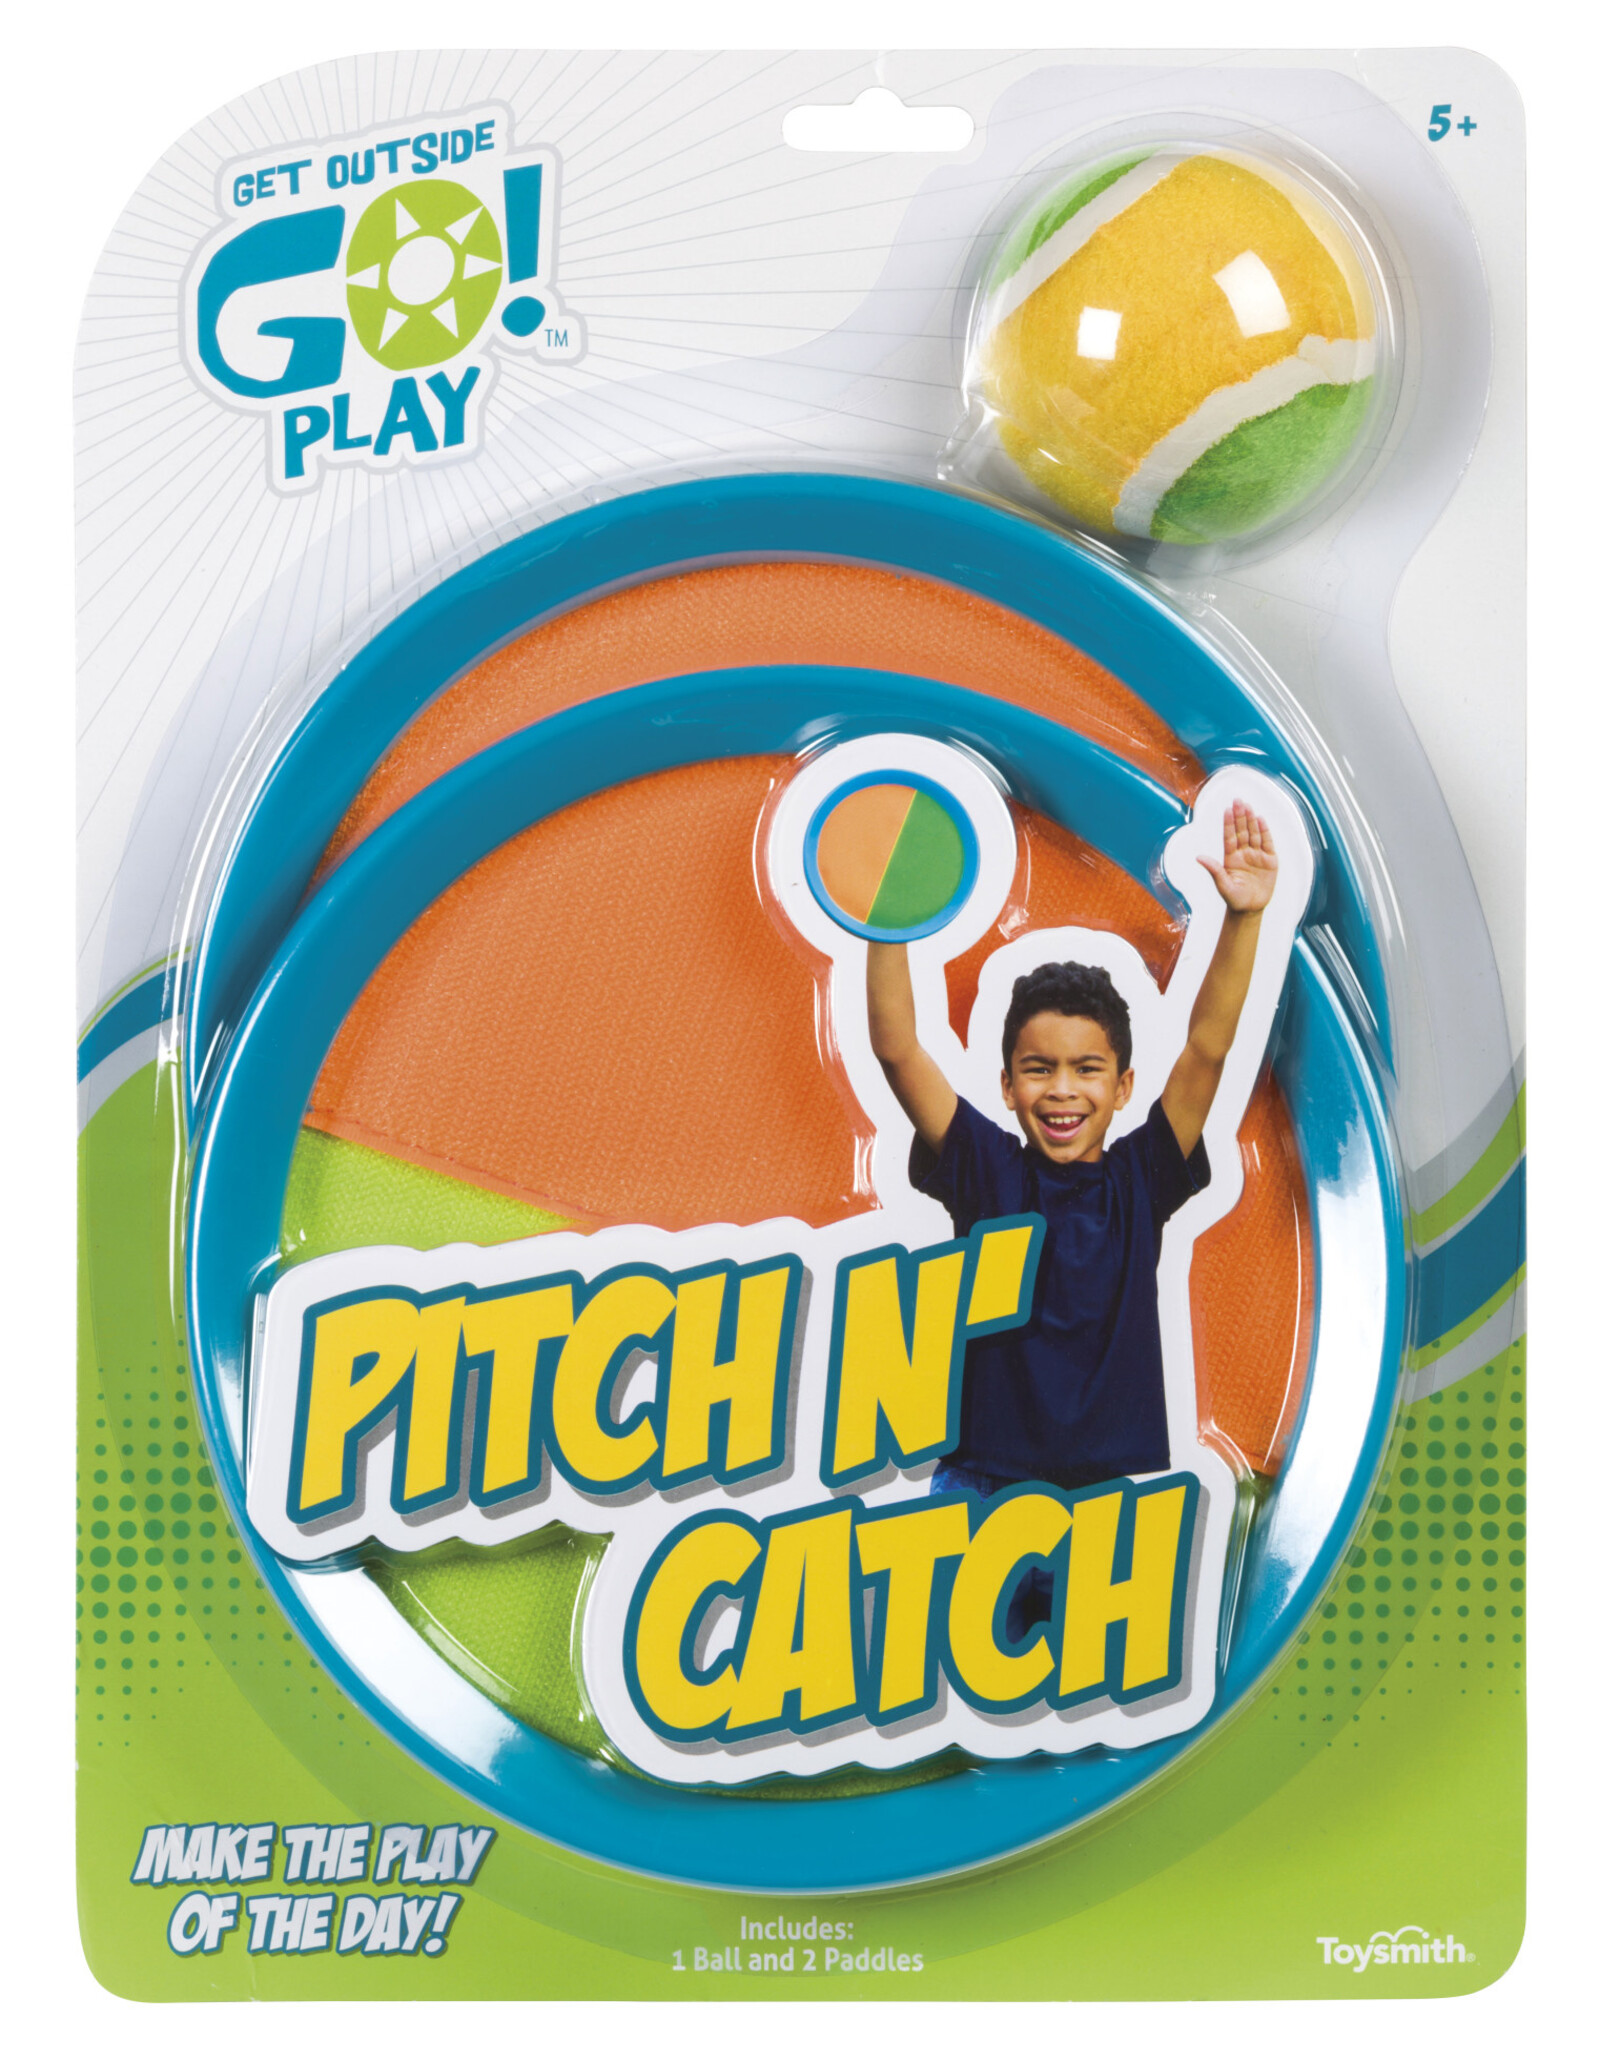 TOYSMITH Pitch N Catch